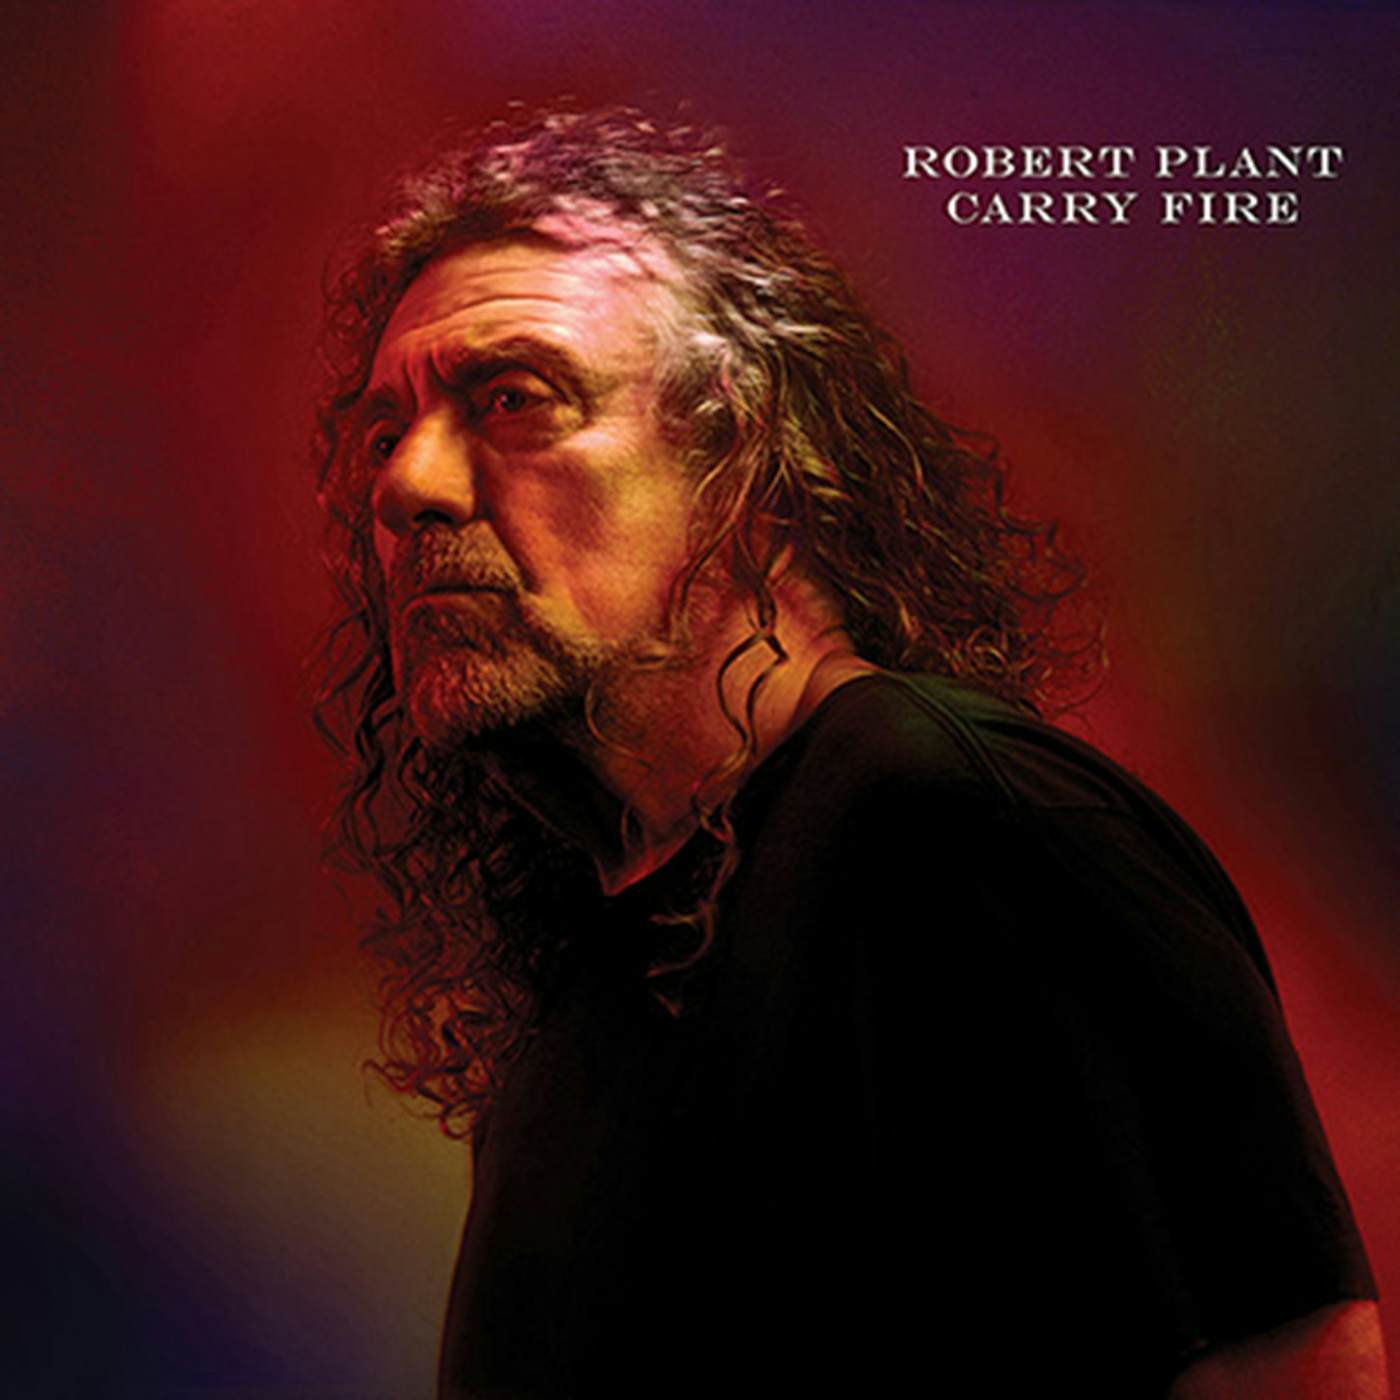 Robert Plant CARRY FIRE CD